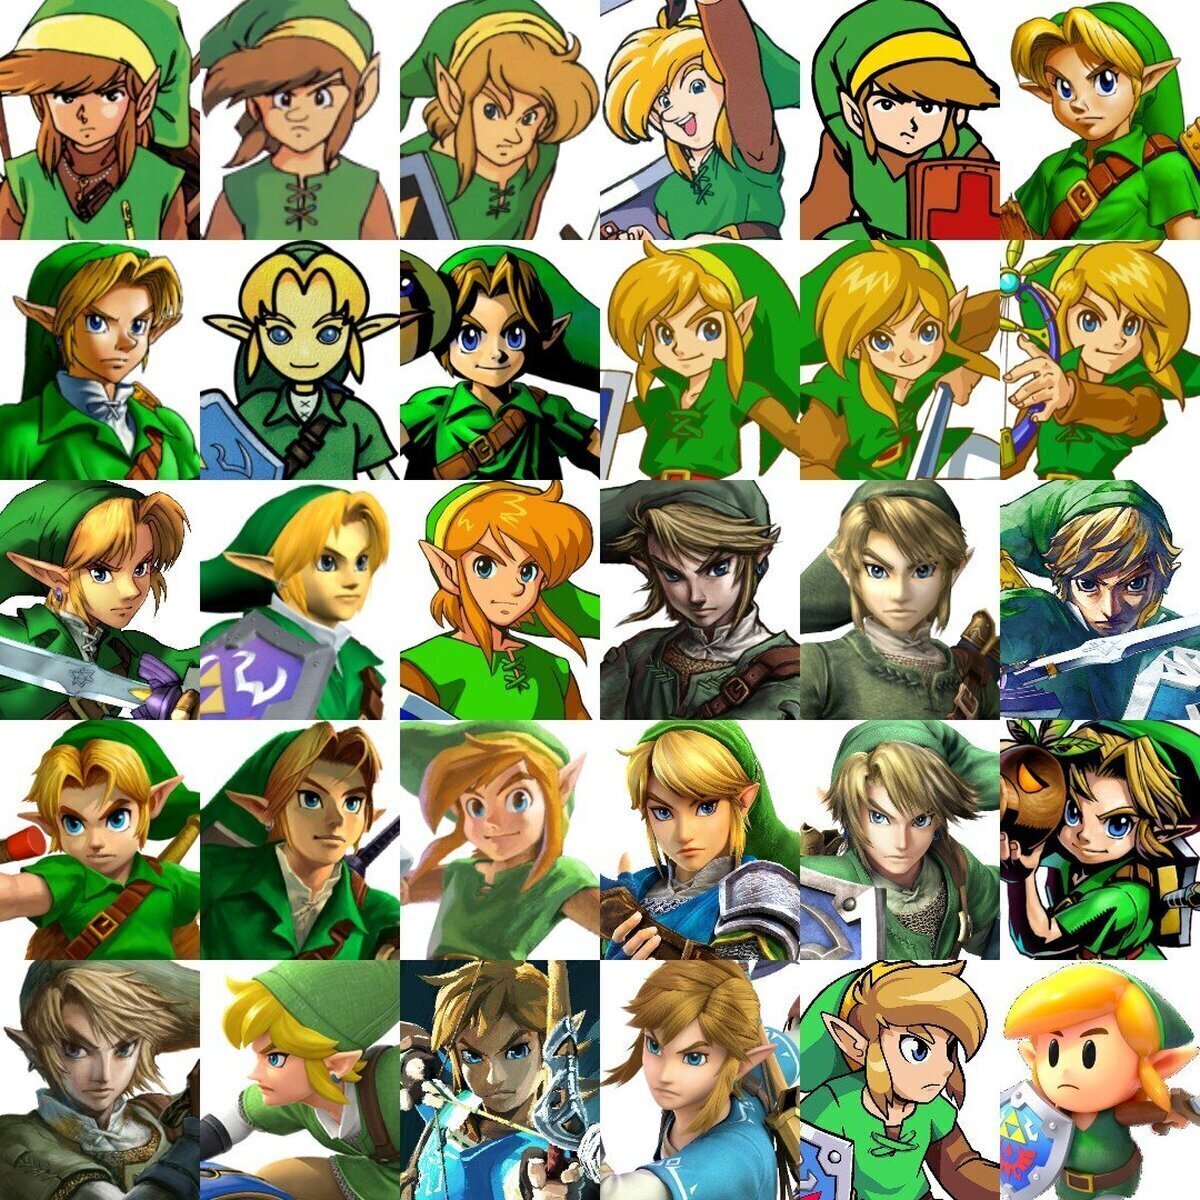 ¿Qué encarnación de Link te gusta más?